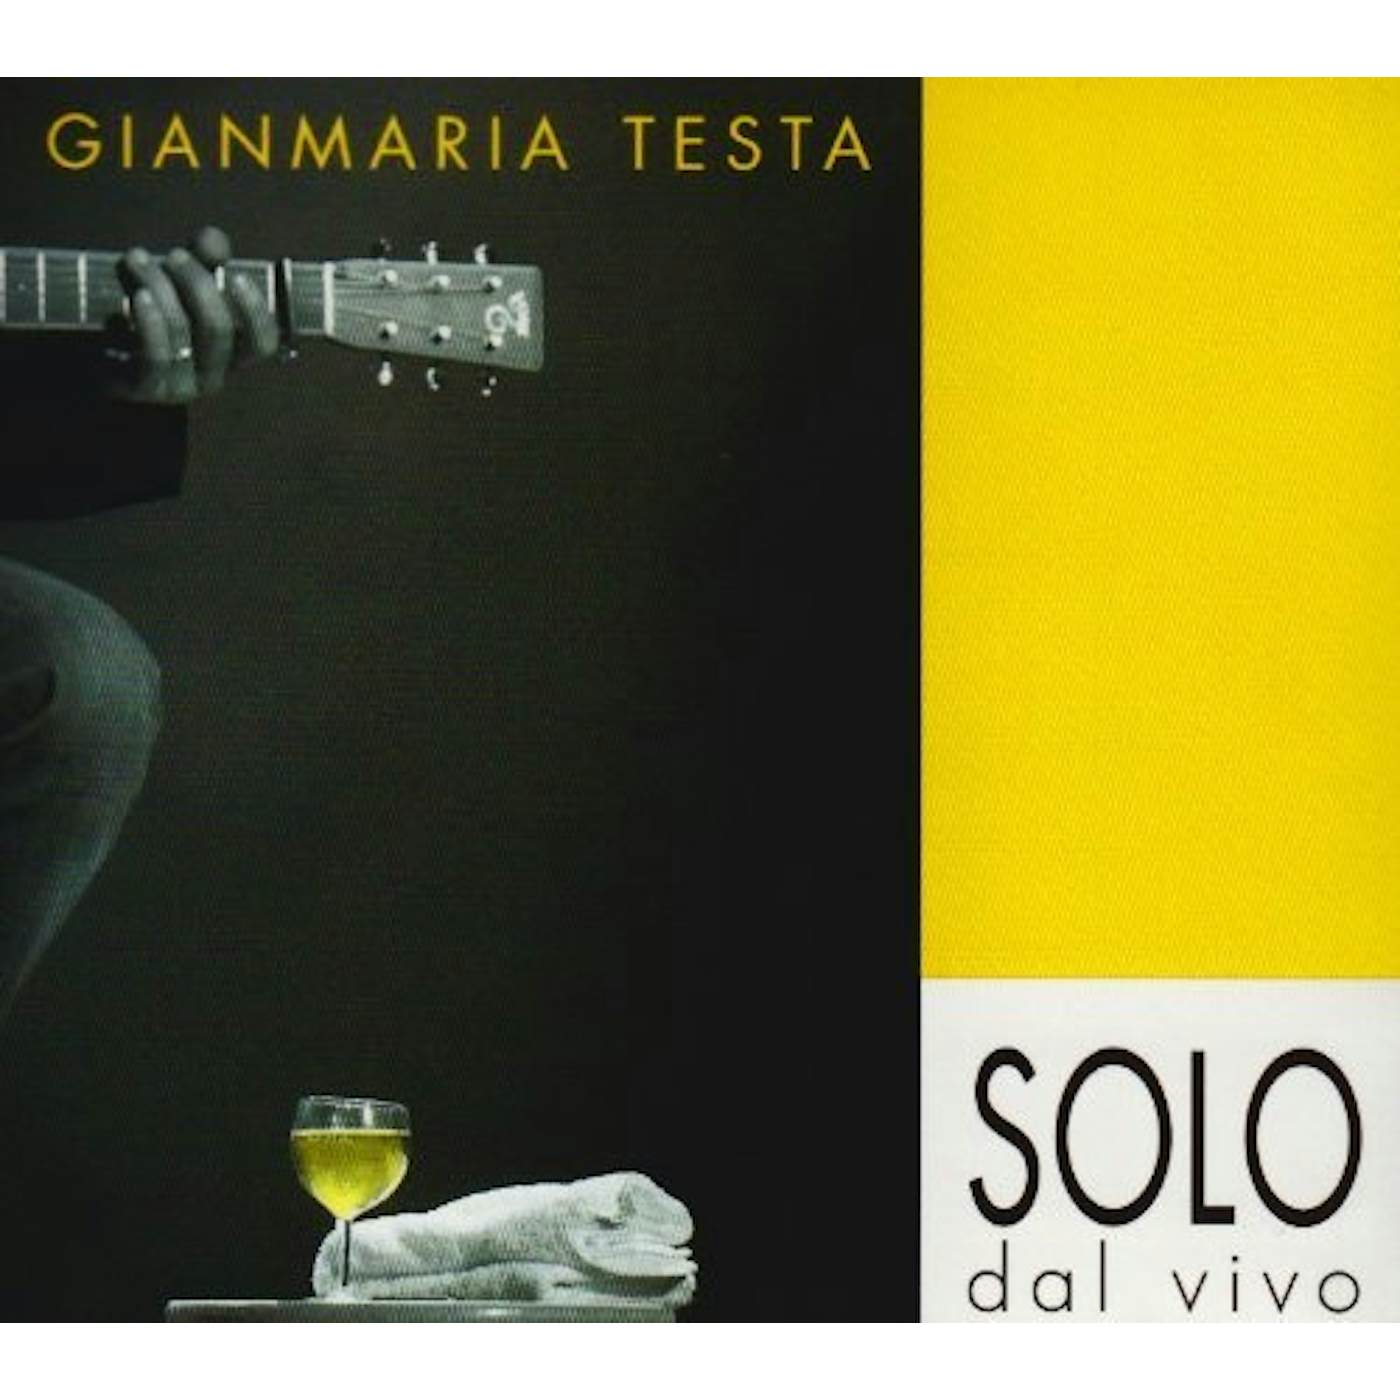 Gianmaria Testa SOLO DAL VIVO CD